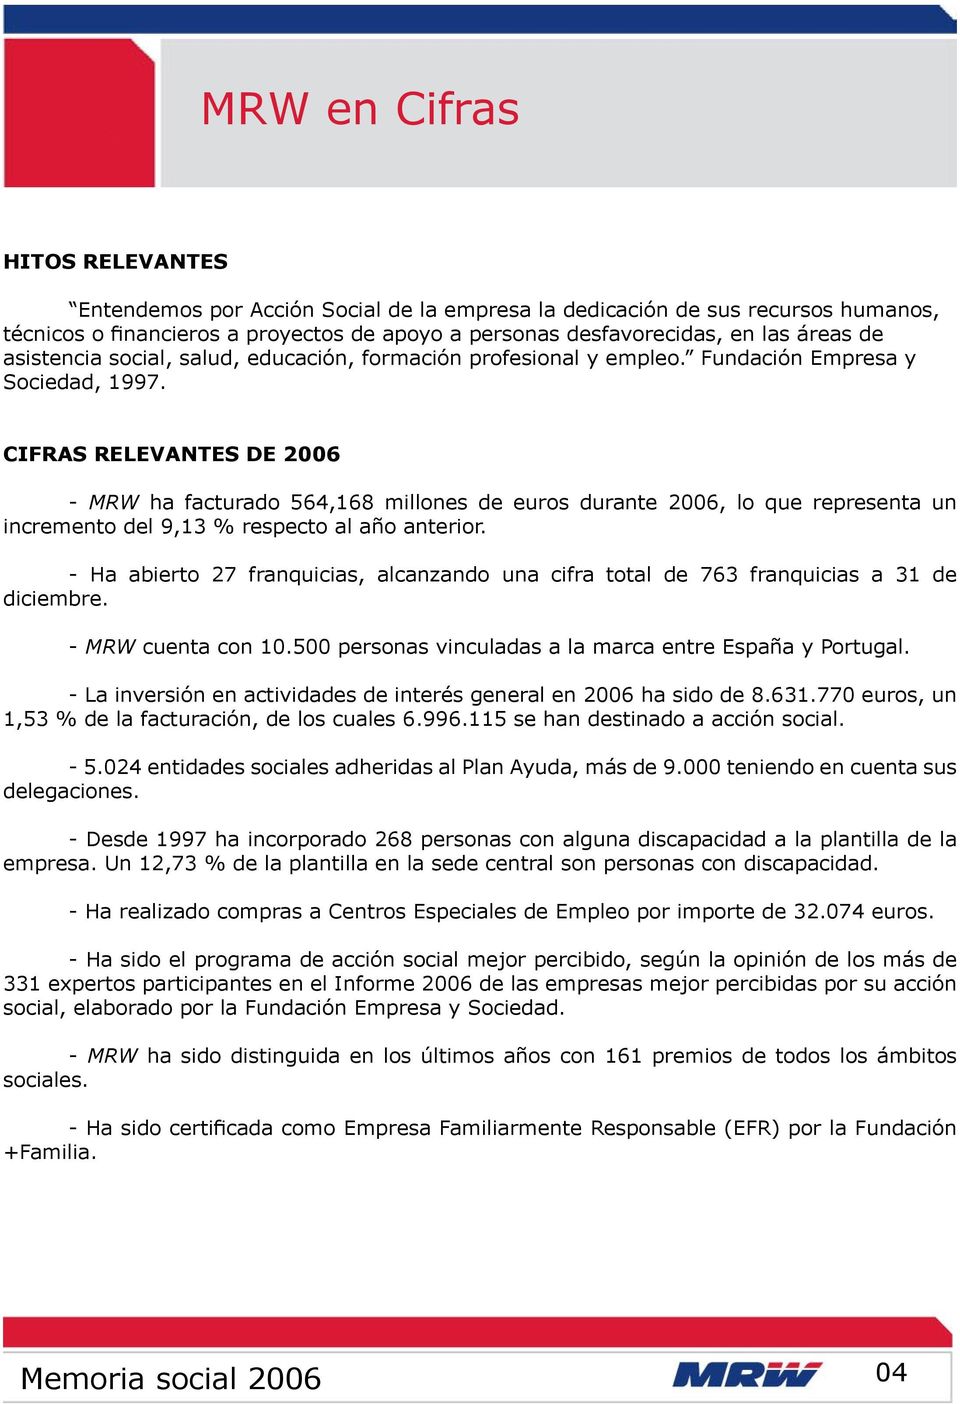 CIFRAS RELEVANTES DE 2006 - MRW ha facturado 564,168 millones de euros durante 2006, lo que representa un incremento del 9,13 % respecto al año anterior.